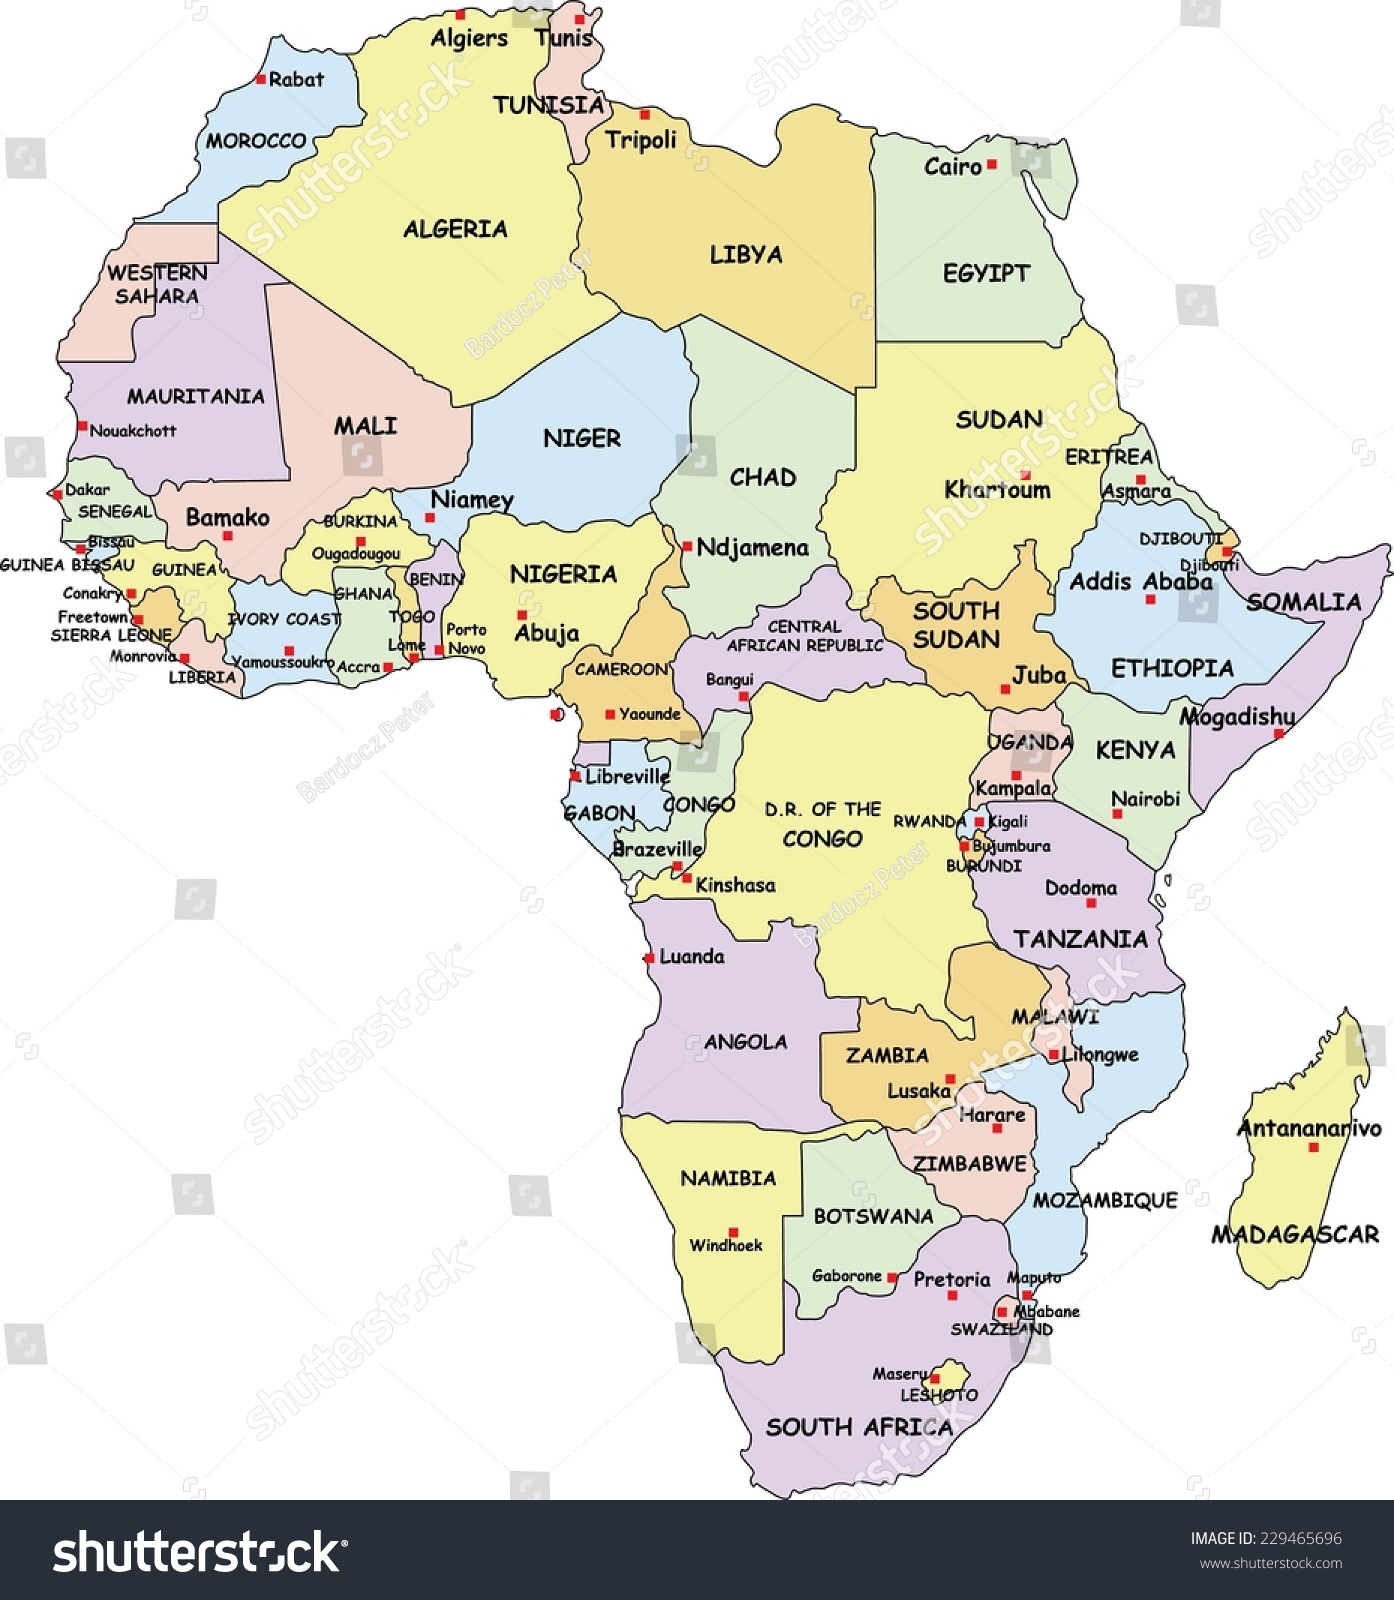 高度详细的非洲政治地图的国家和首都的名字。